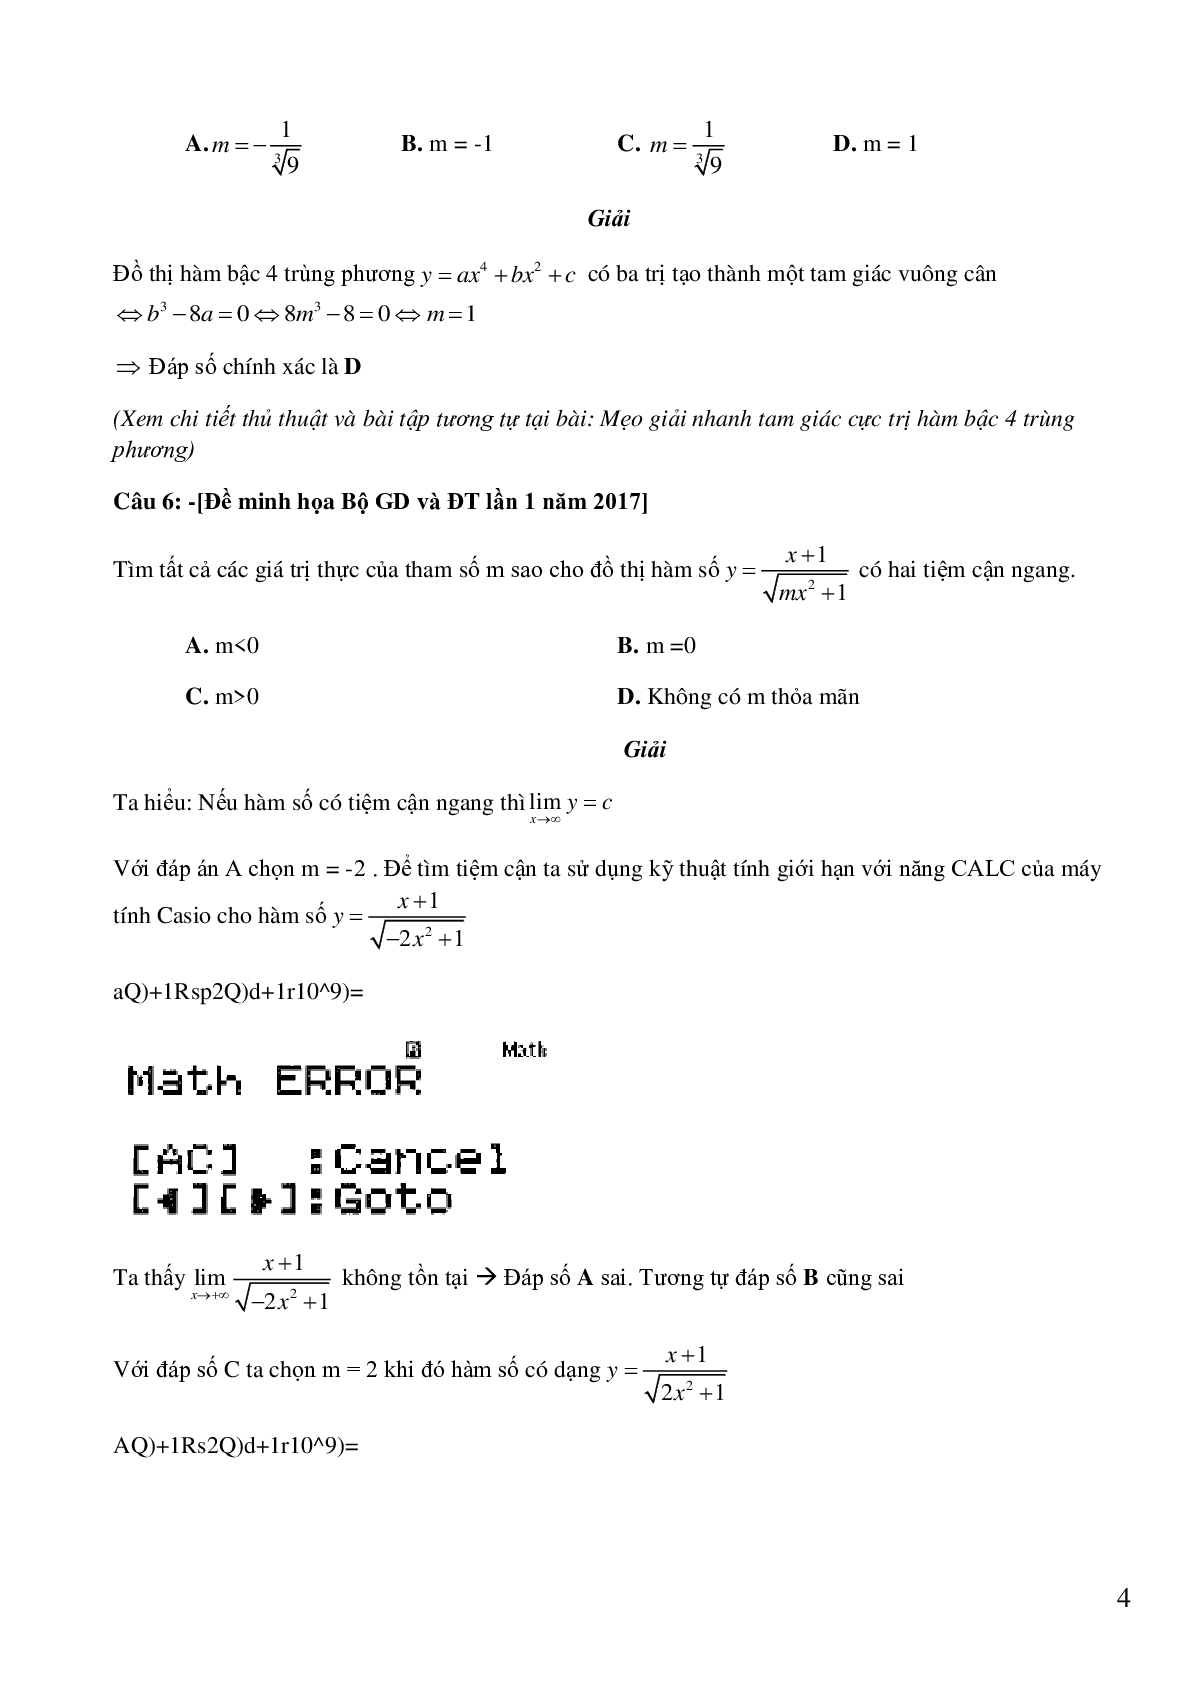 72 câu trắc nghiệm sử dụng Casio có đáp án (trang 4)